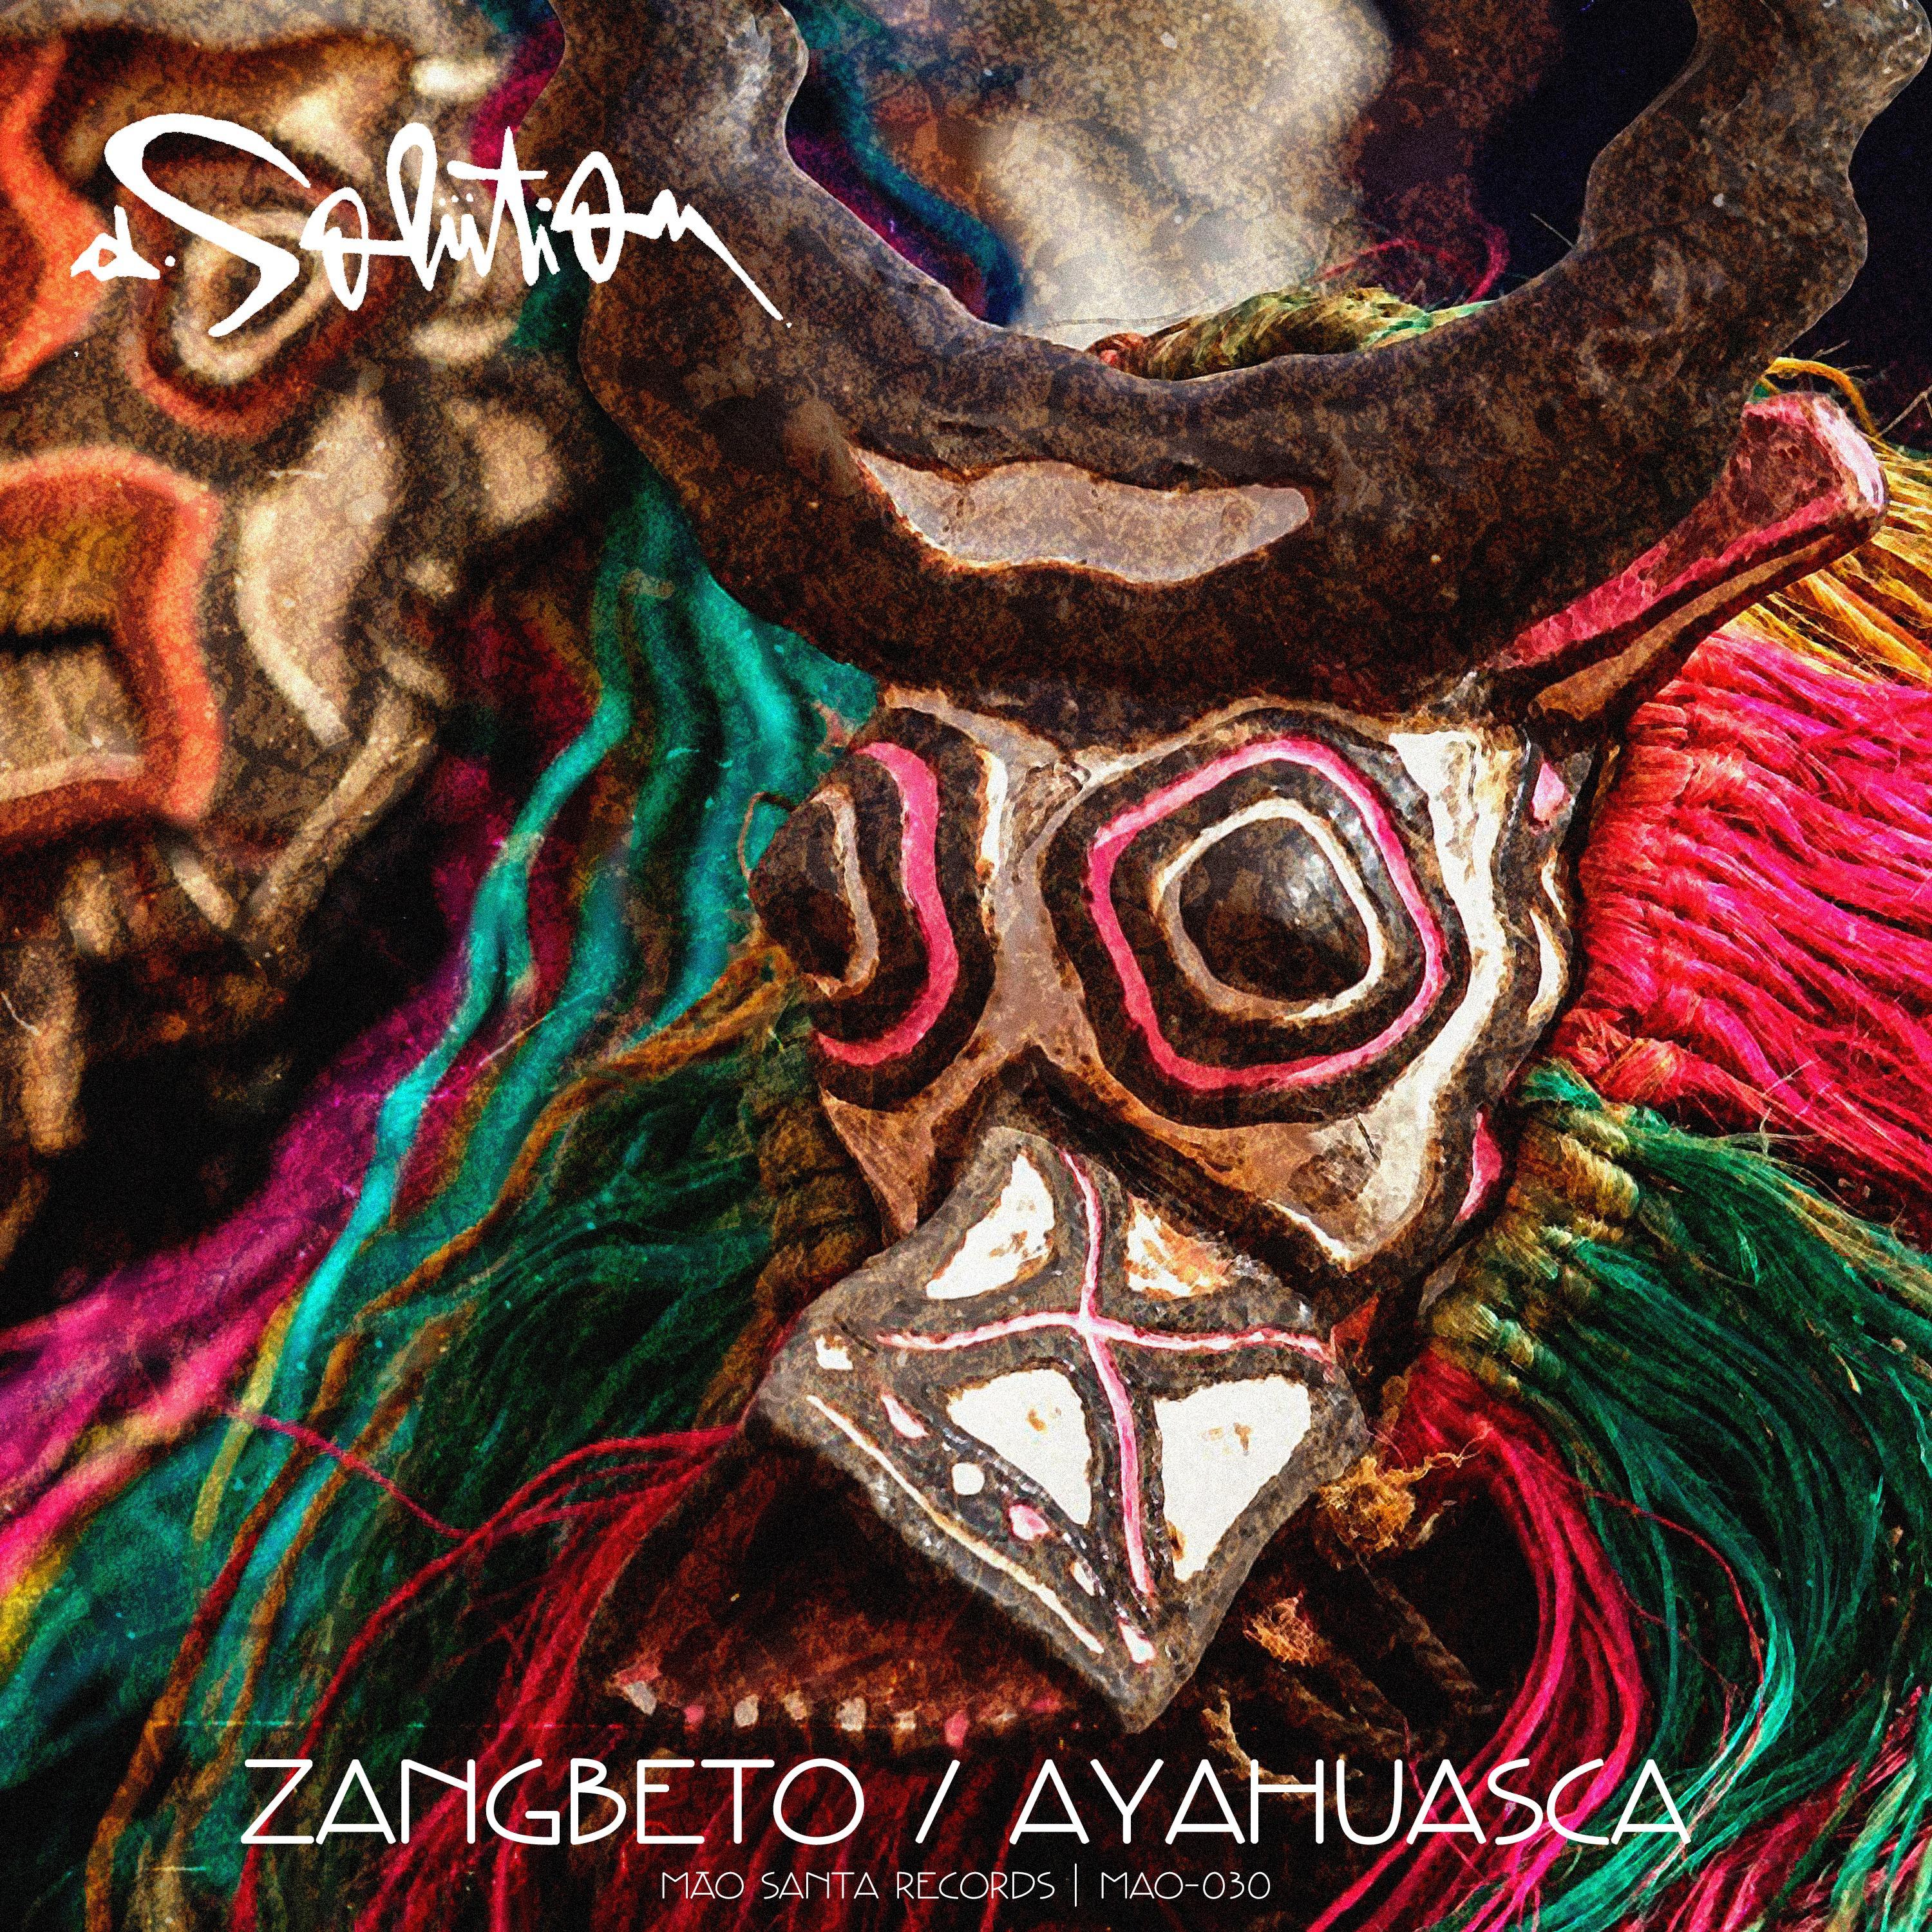 Zangbeto / Ayahuasca